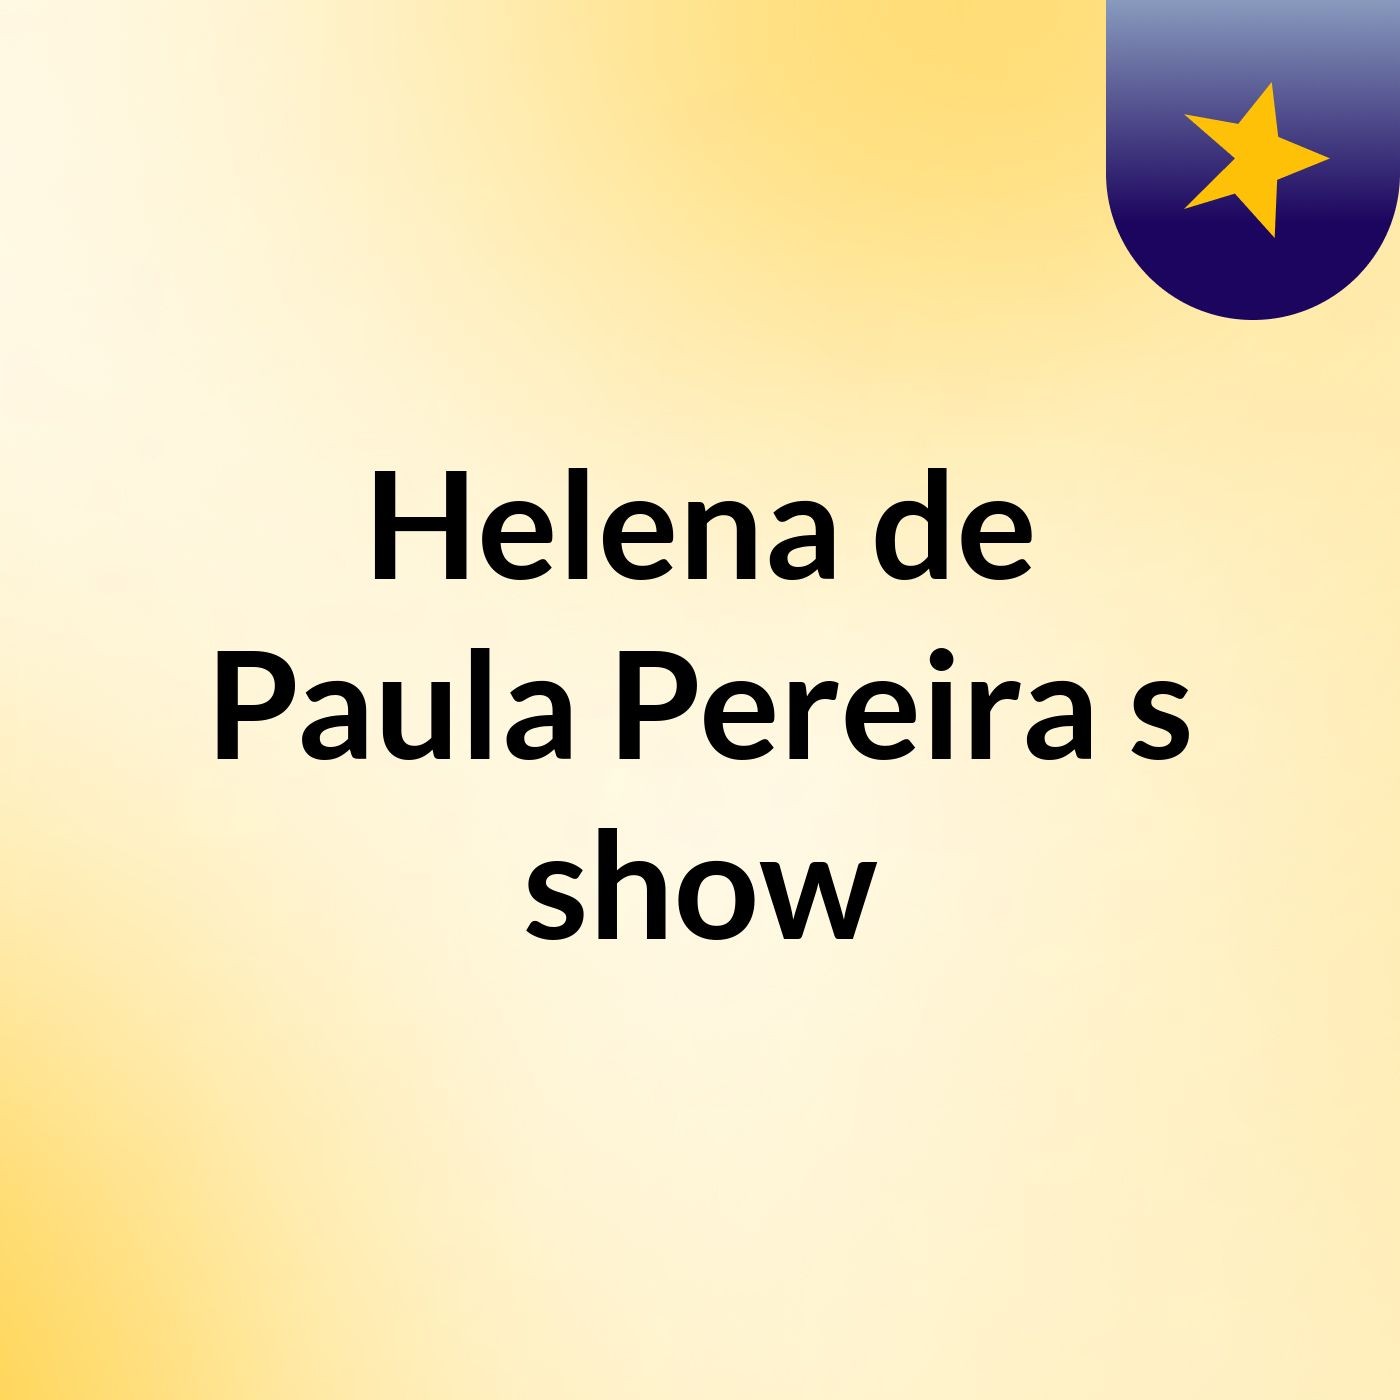 Helena de Paula Pereira's show